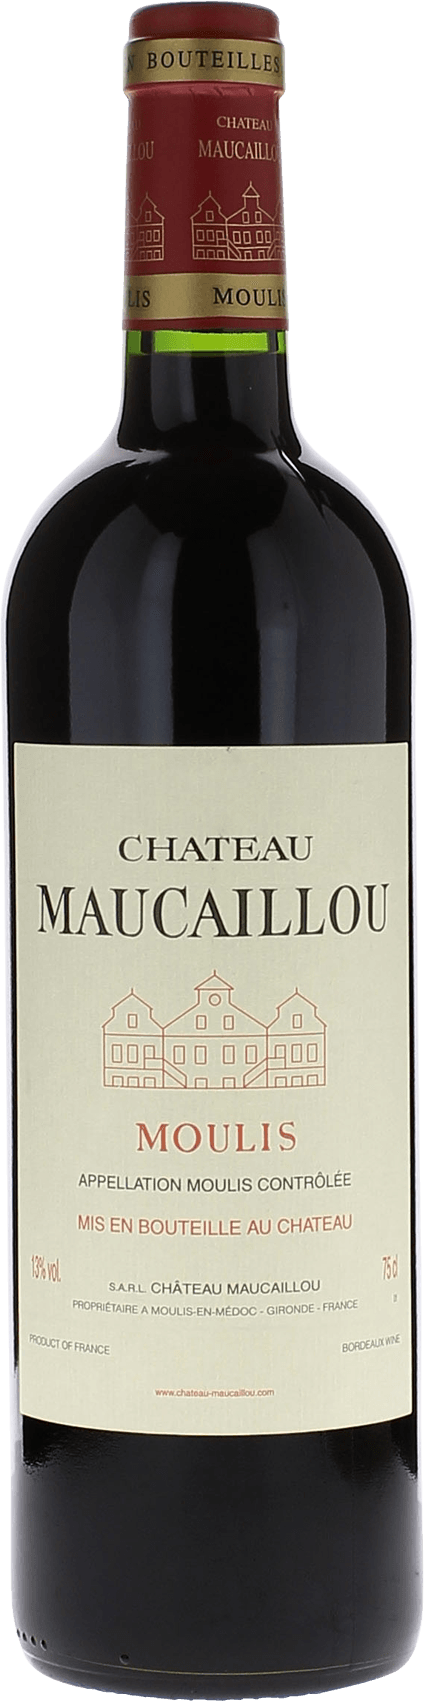 Maucaillou 1996  Moulis, Bordeaux rouge